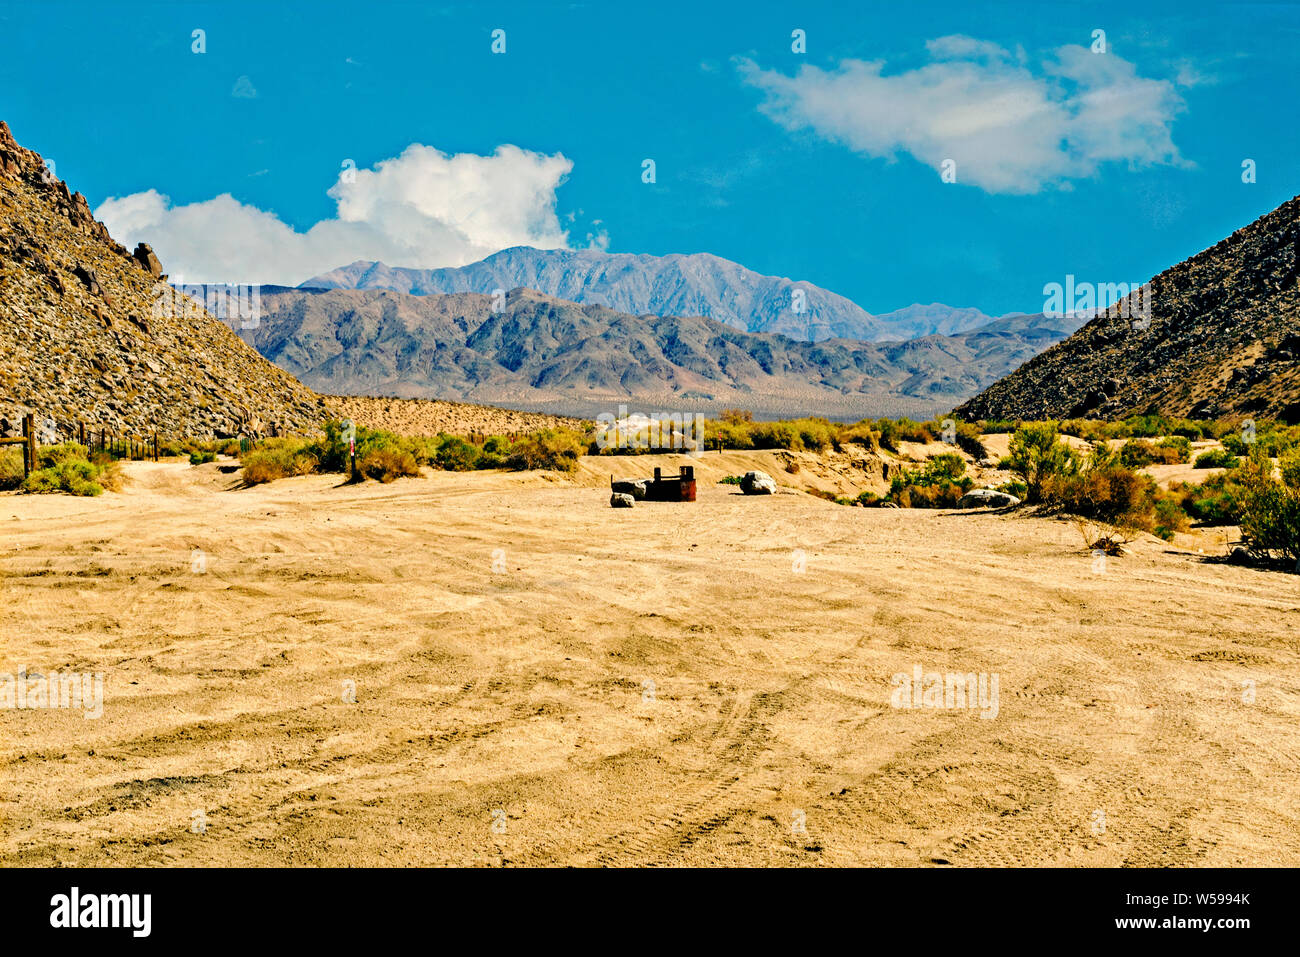 Gelb Braun Sandy Desert Talboden mit spärlicher Vegetation wachsen in zwischen zwei kargen Berge mit blauen unfruchtbaren Bergen reicht darüber hinaus, blauer Himmel. Stockfoto